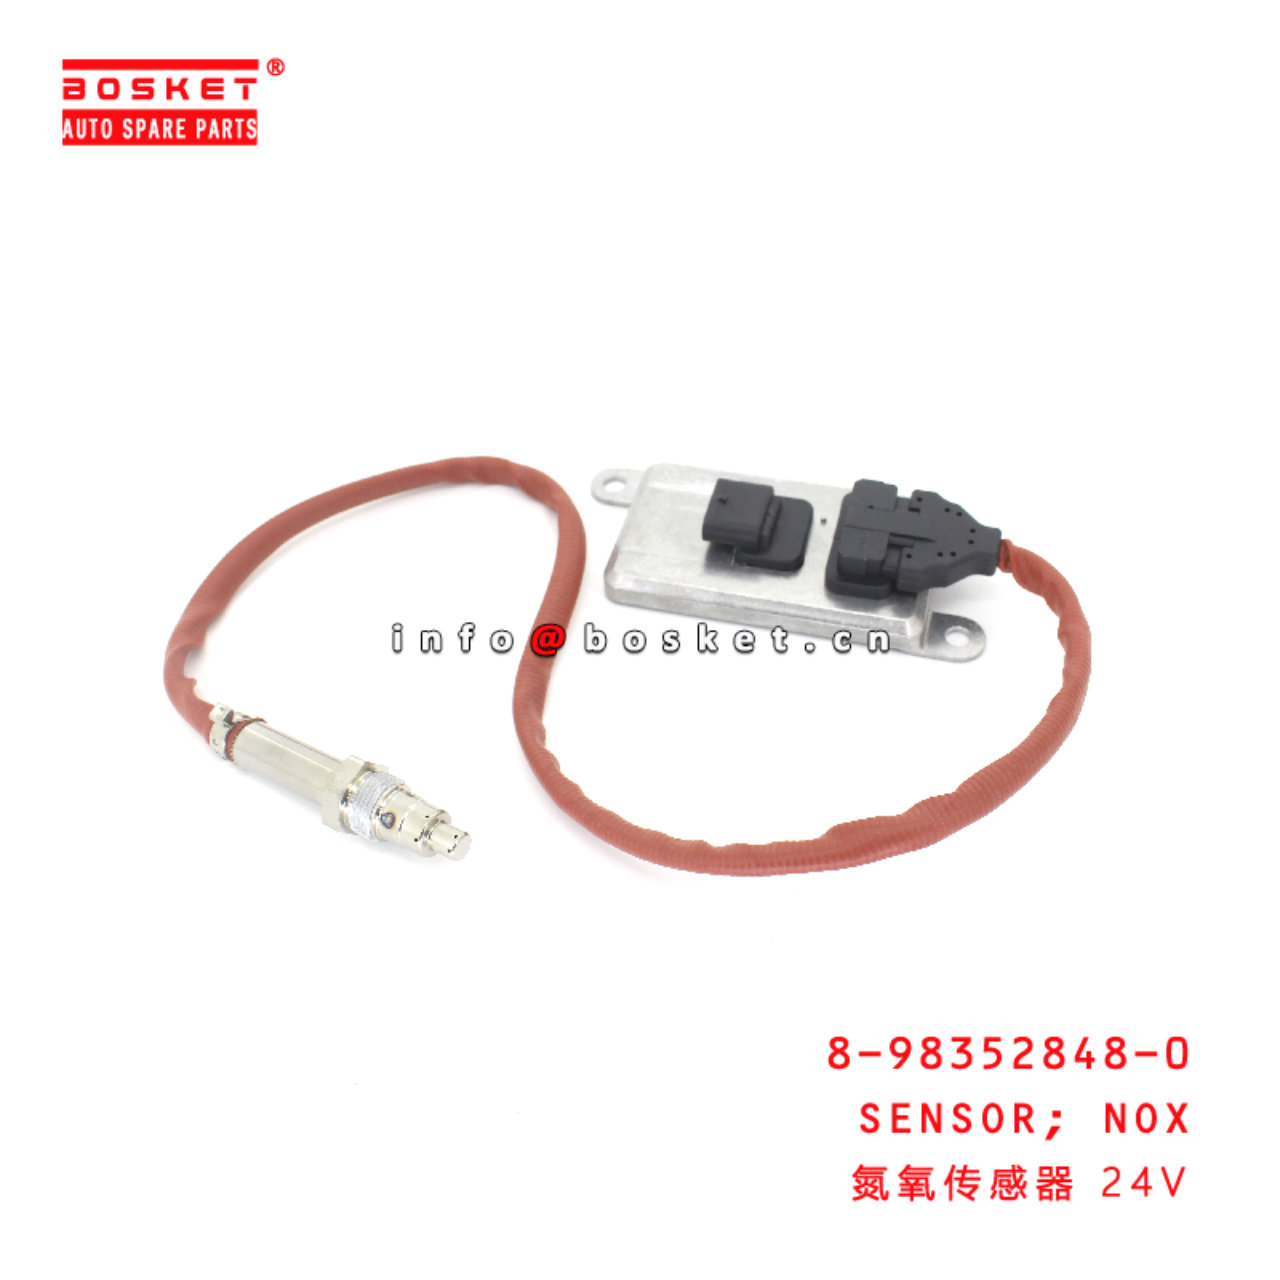 8-98352848-0 Nox Sensor suitable for ISUZU 8983528480